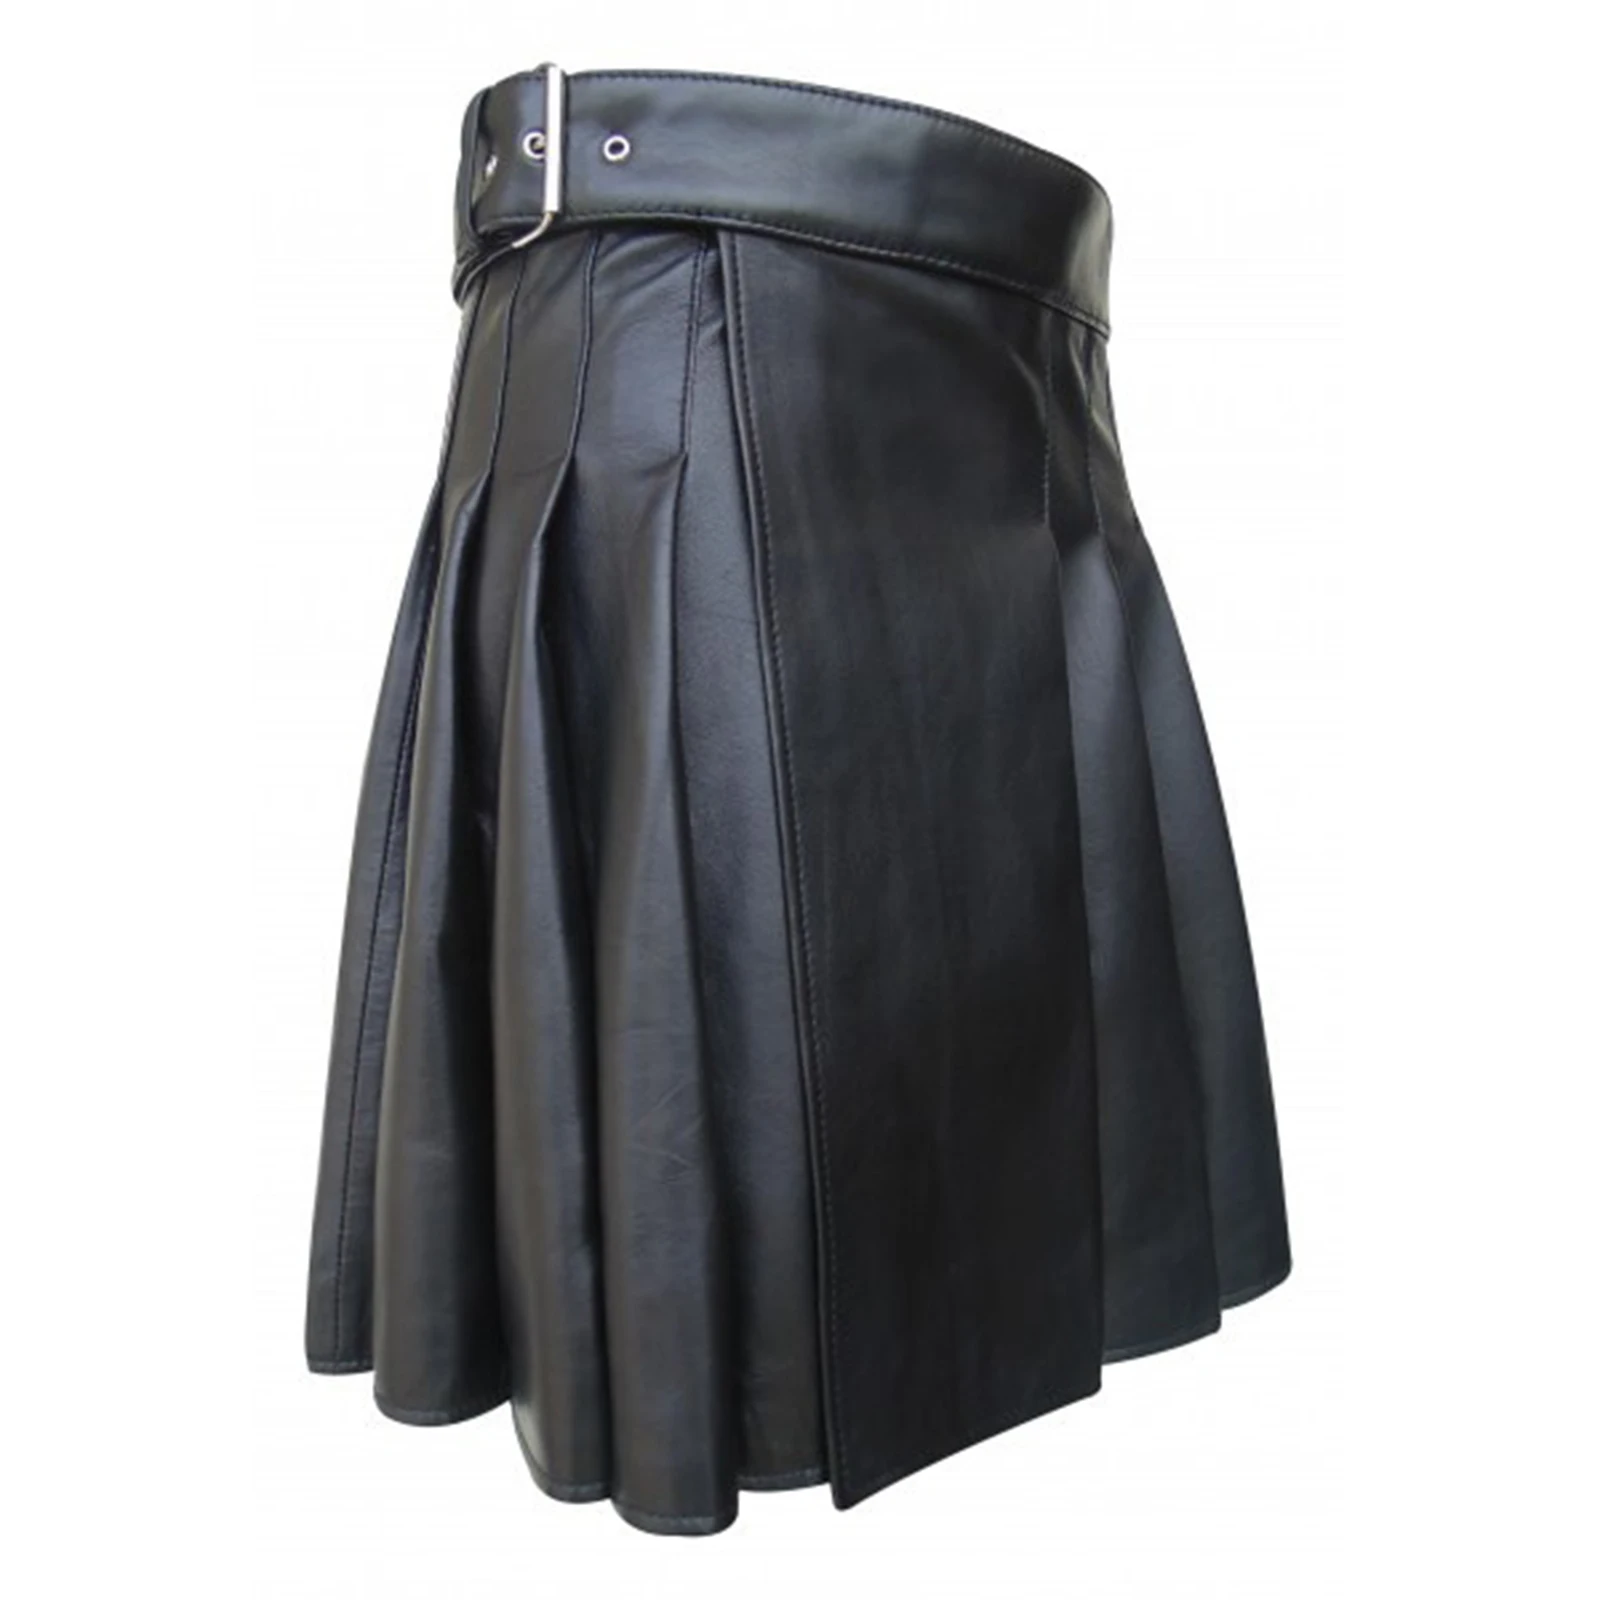 Men's Wetlook Rock Kilt Miniskirt Faux Leather Skirts with Slit Sexy Dresses Underwear Nightwear Latex Lingerie Party Clubwear